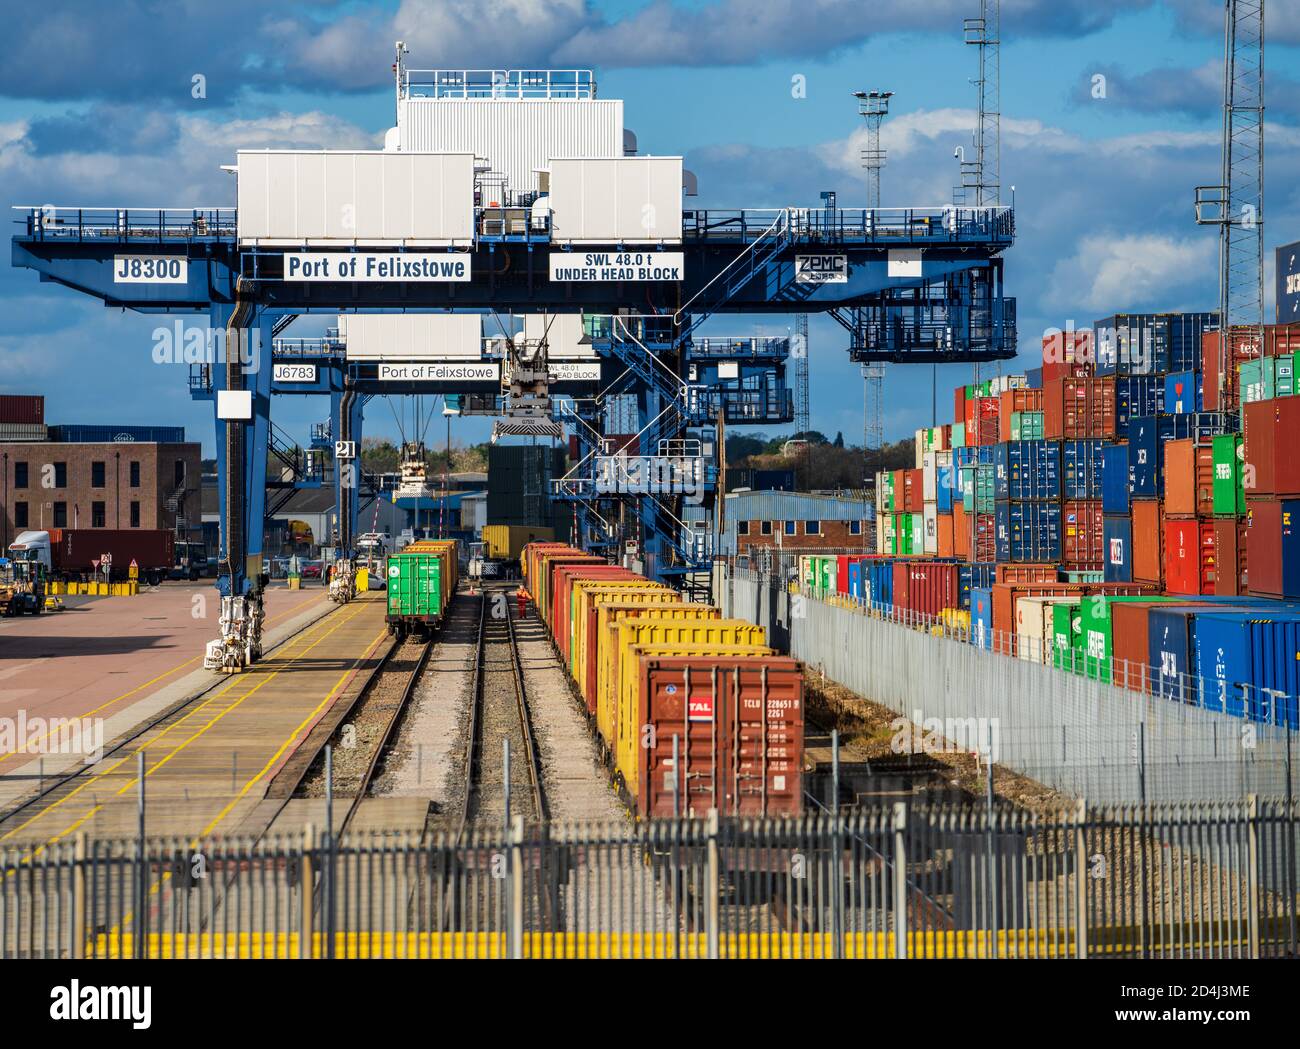 Trasporto ferroviario UK - i container intermodali vengono caricati sui treni merci nel porto di Felixstowe, il più grande porto per container del Regno Unito. Foto Stock